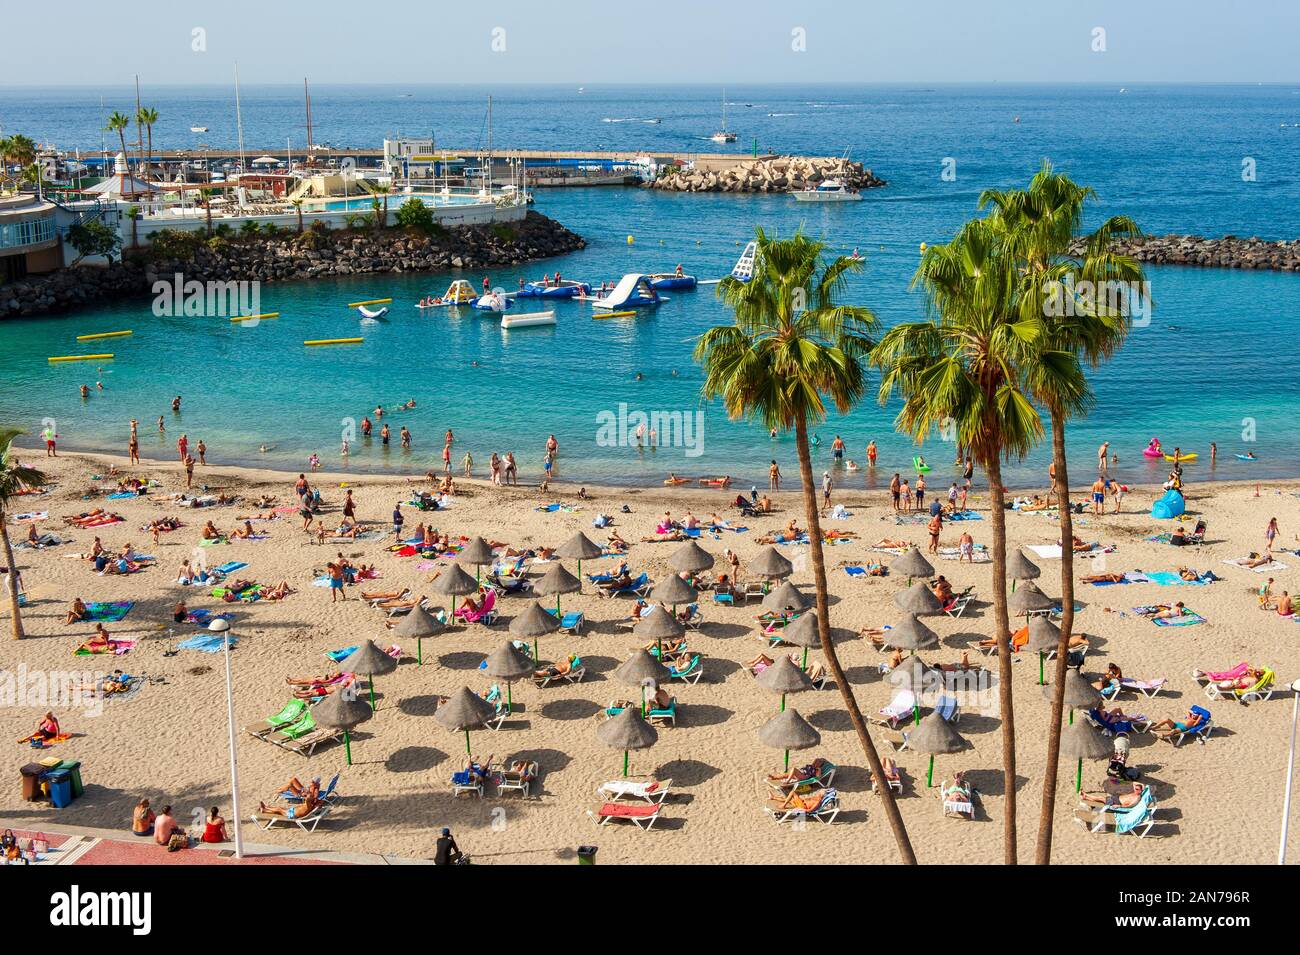 Île des Canaries Tenerife, Espagne - 26 déc, 2019 : les touristes sont de détente sur la plage la pinta puerto colon. Une plage très populaire près de la ville de San Eugenio. Banque D'Images